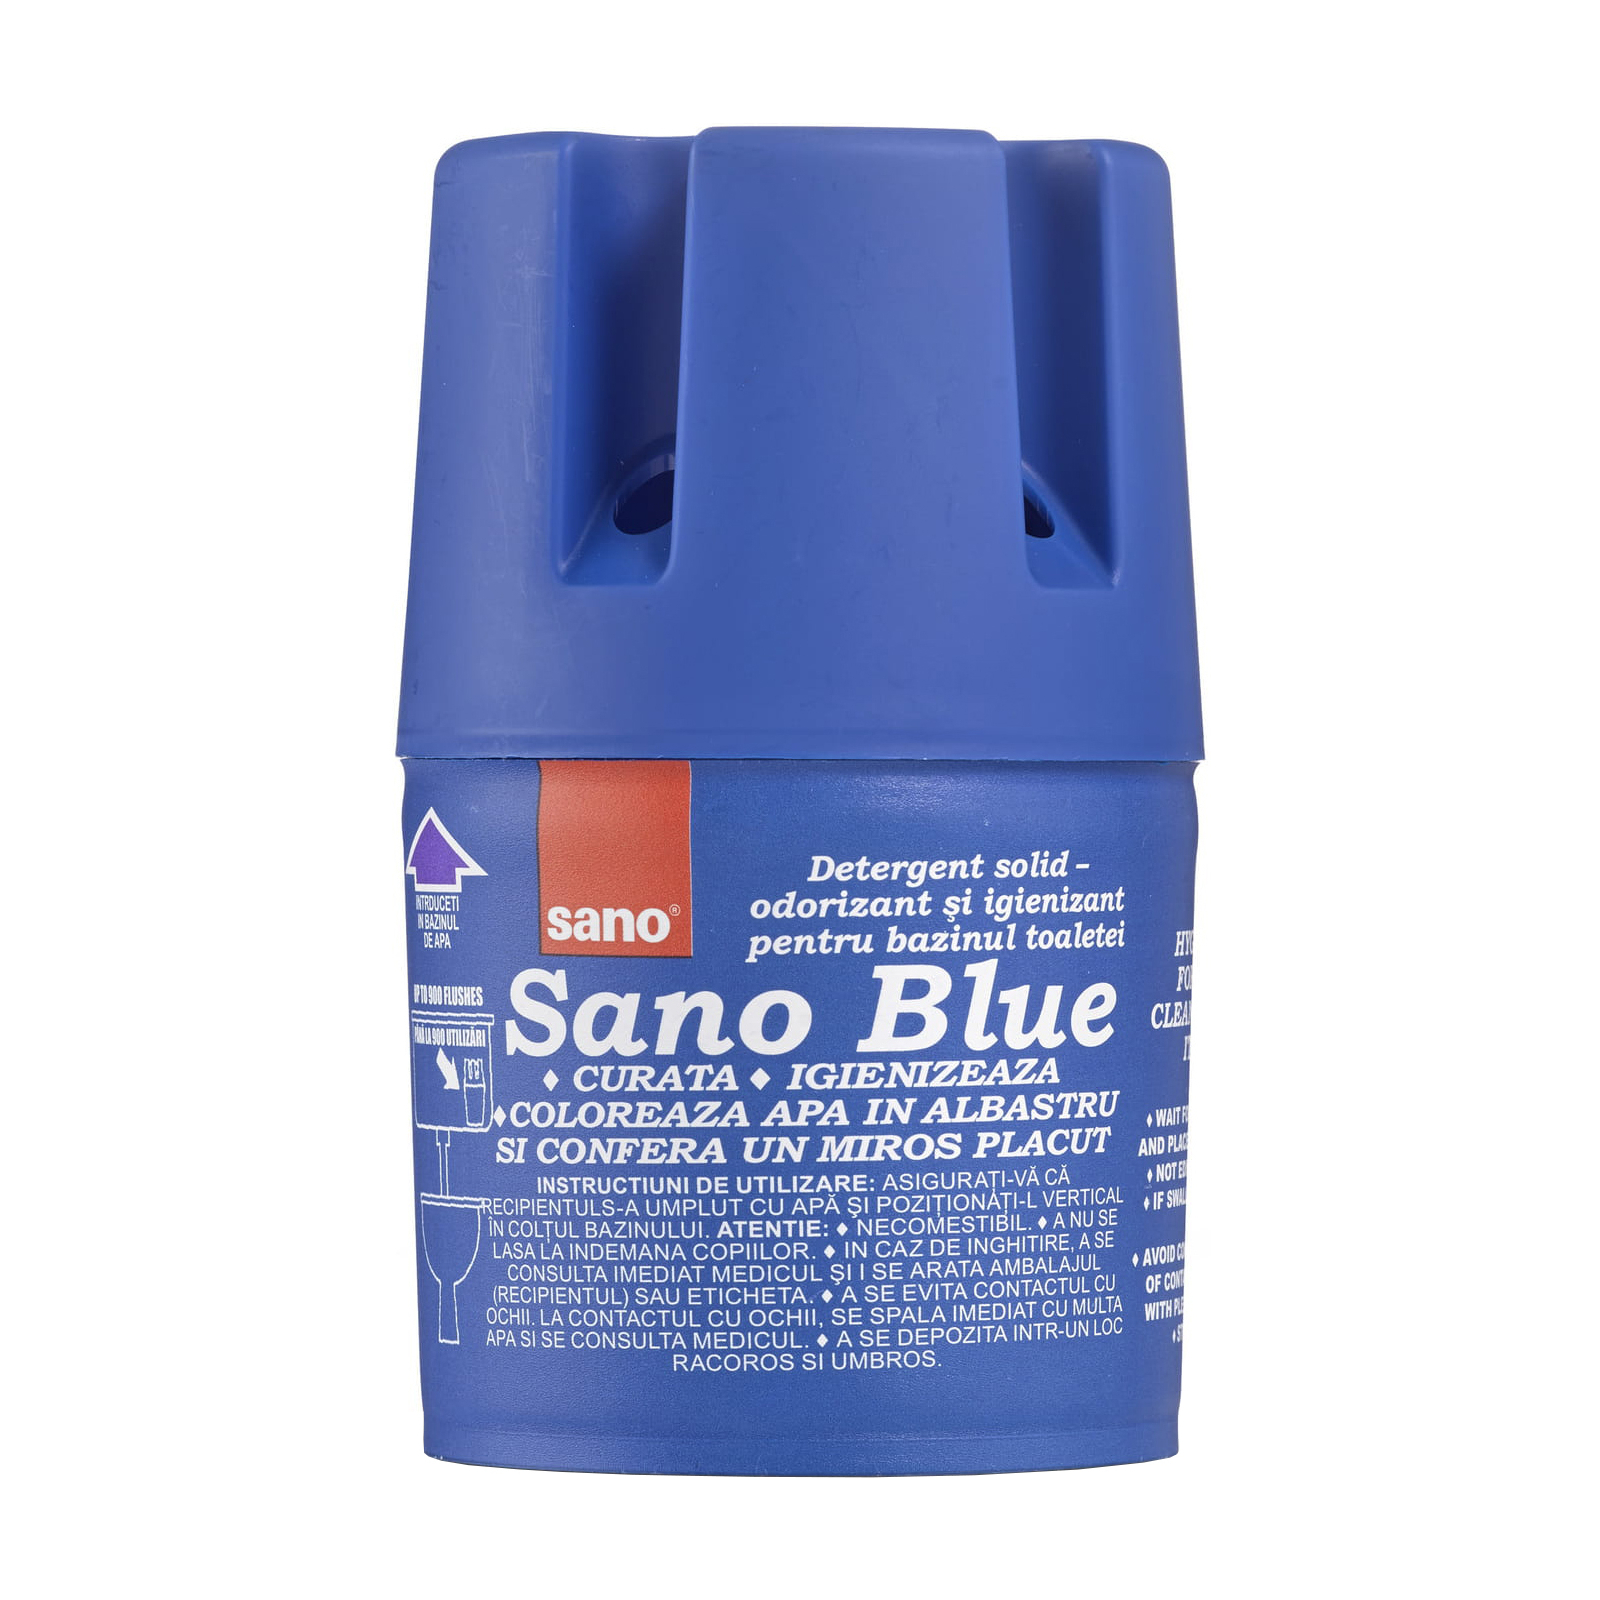 Средство для чистки унитаза Sano Blue 150 г (7290000287607)